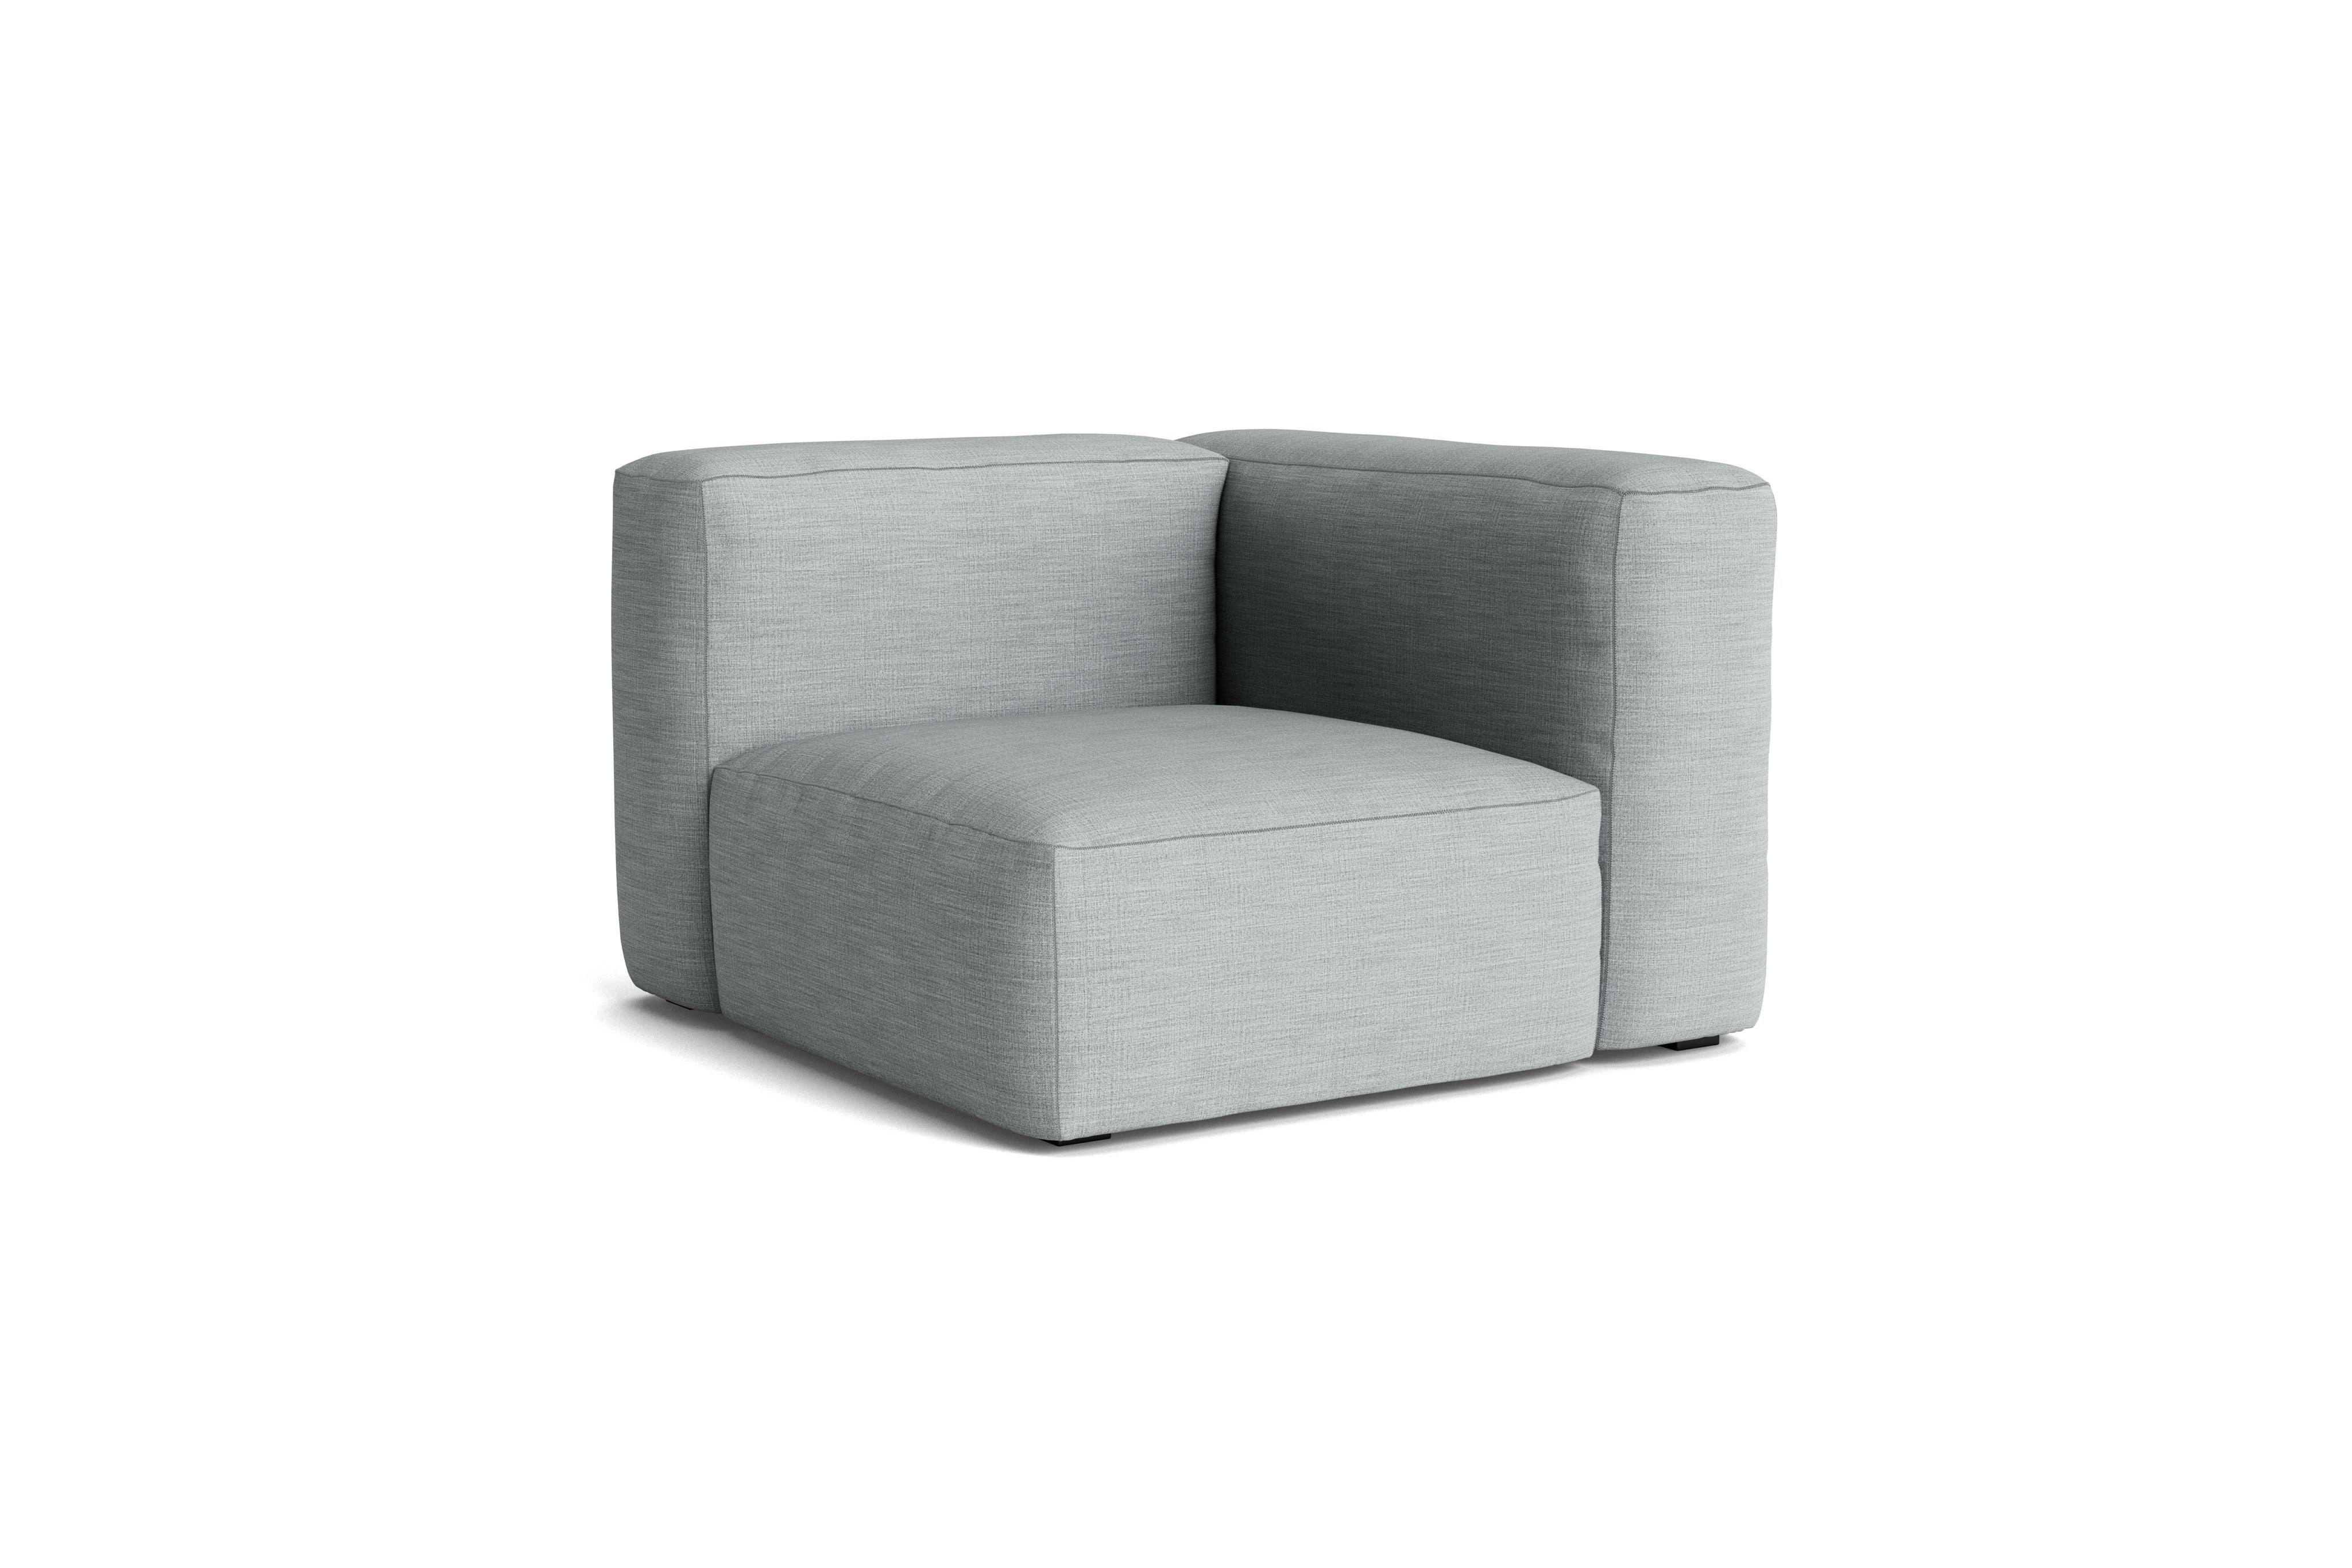 HAY Mags Soft Sofa - Individual Modules